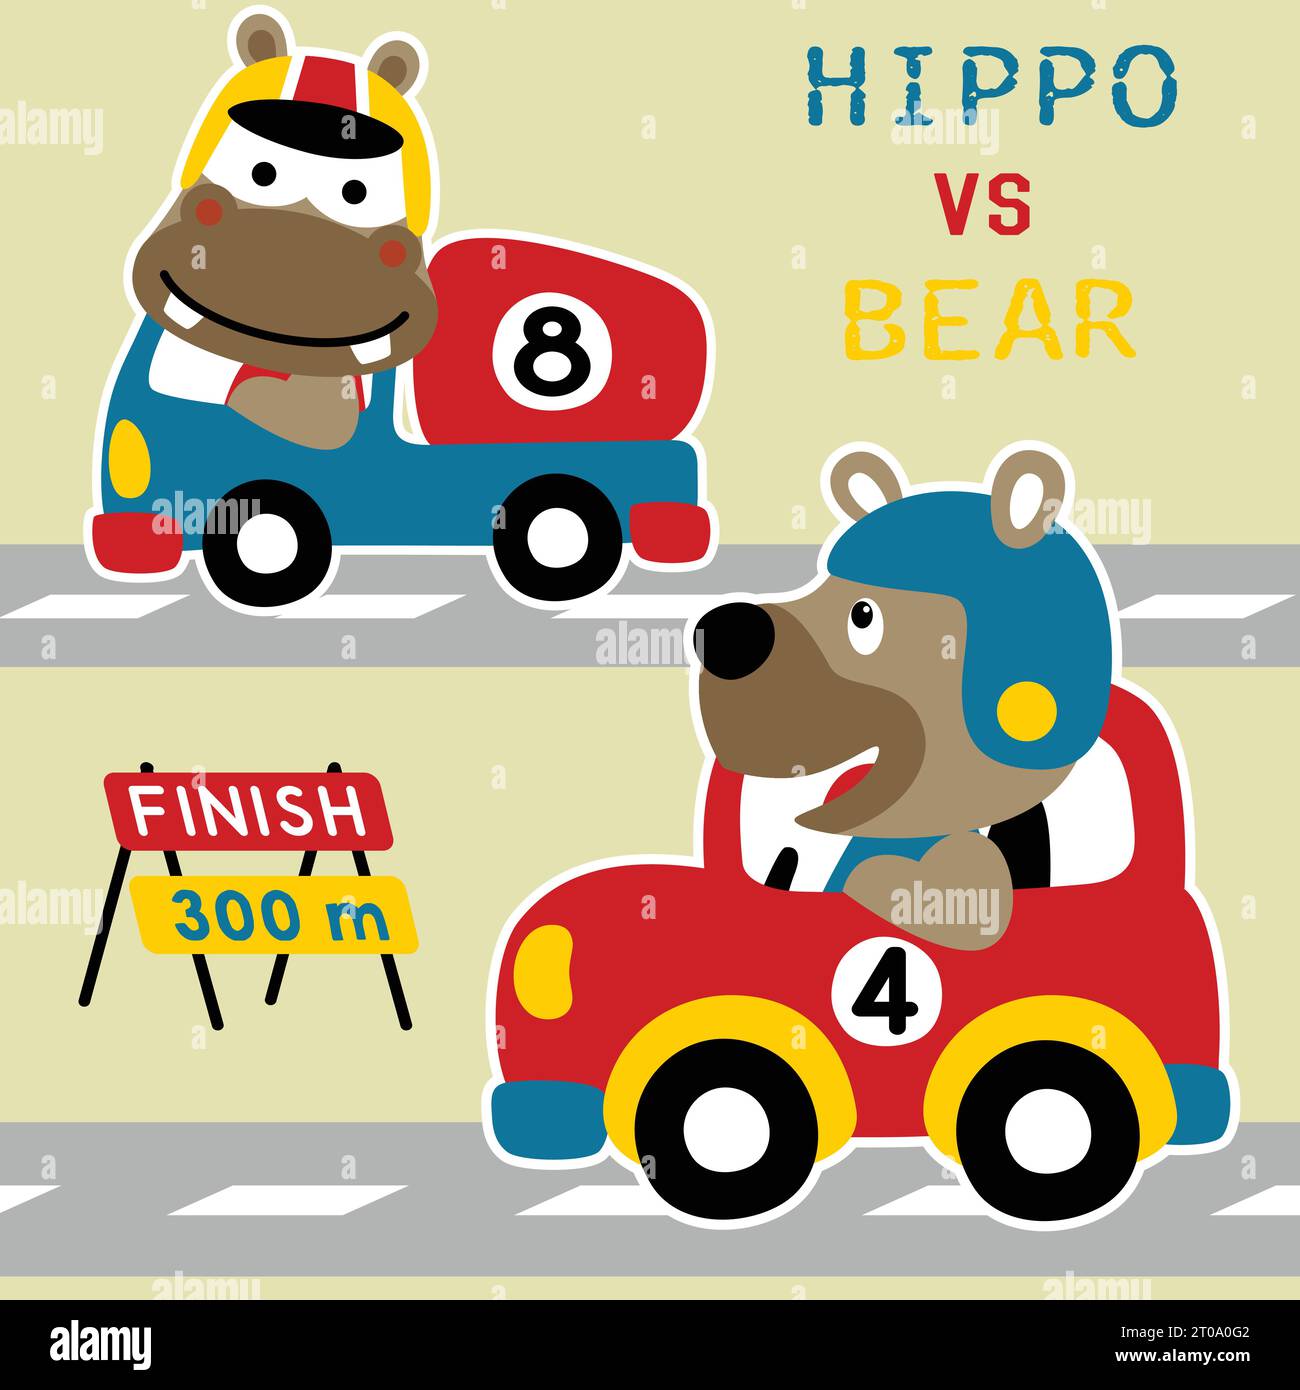 Niedlicher Bär und Nilpferd auf Rennwagen, Vektor-Zeichentrickillustration Stock Vektor